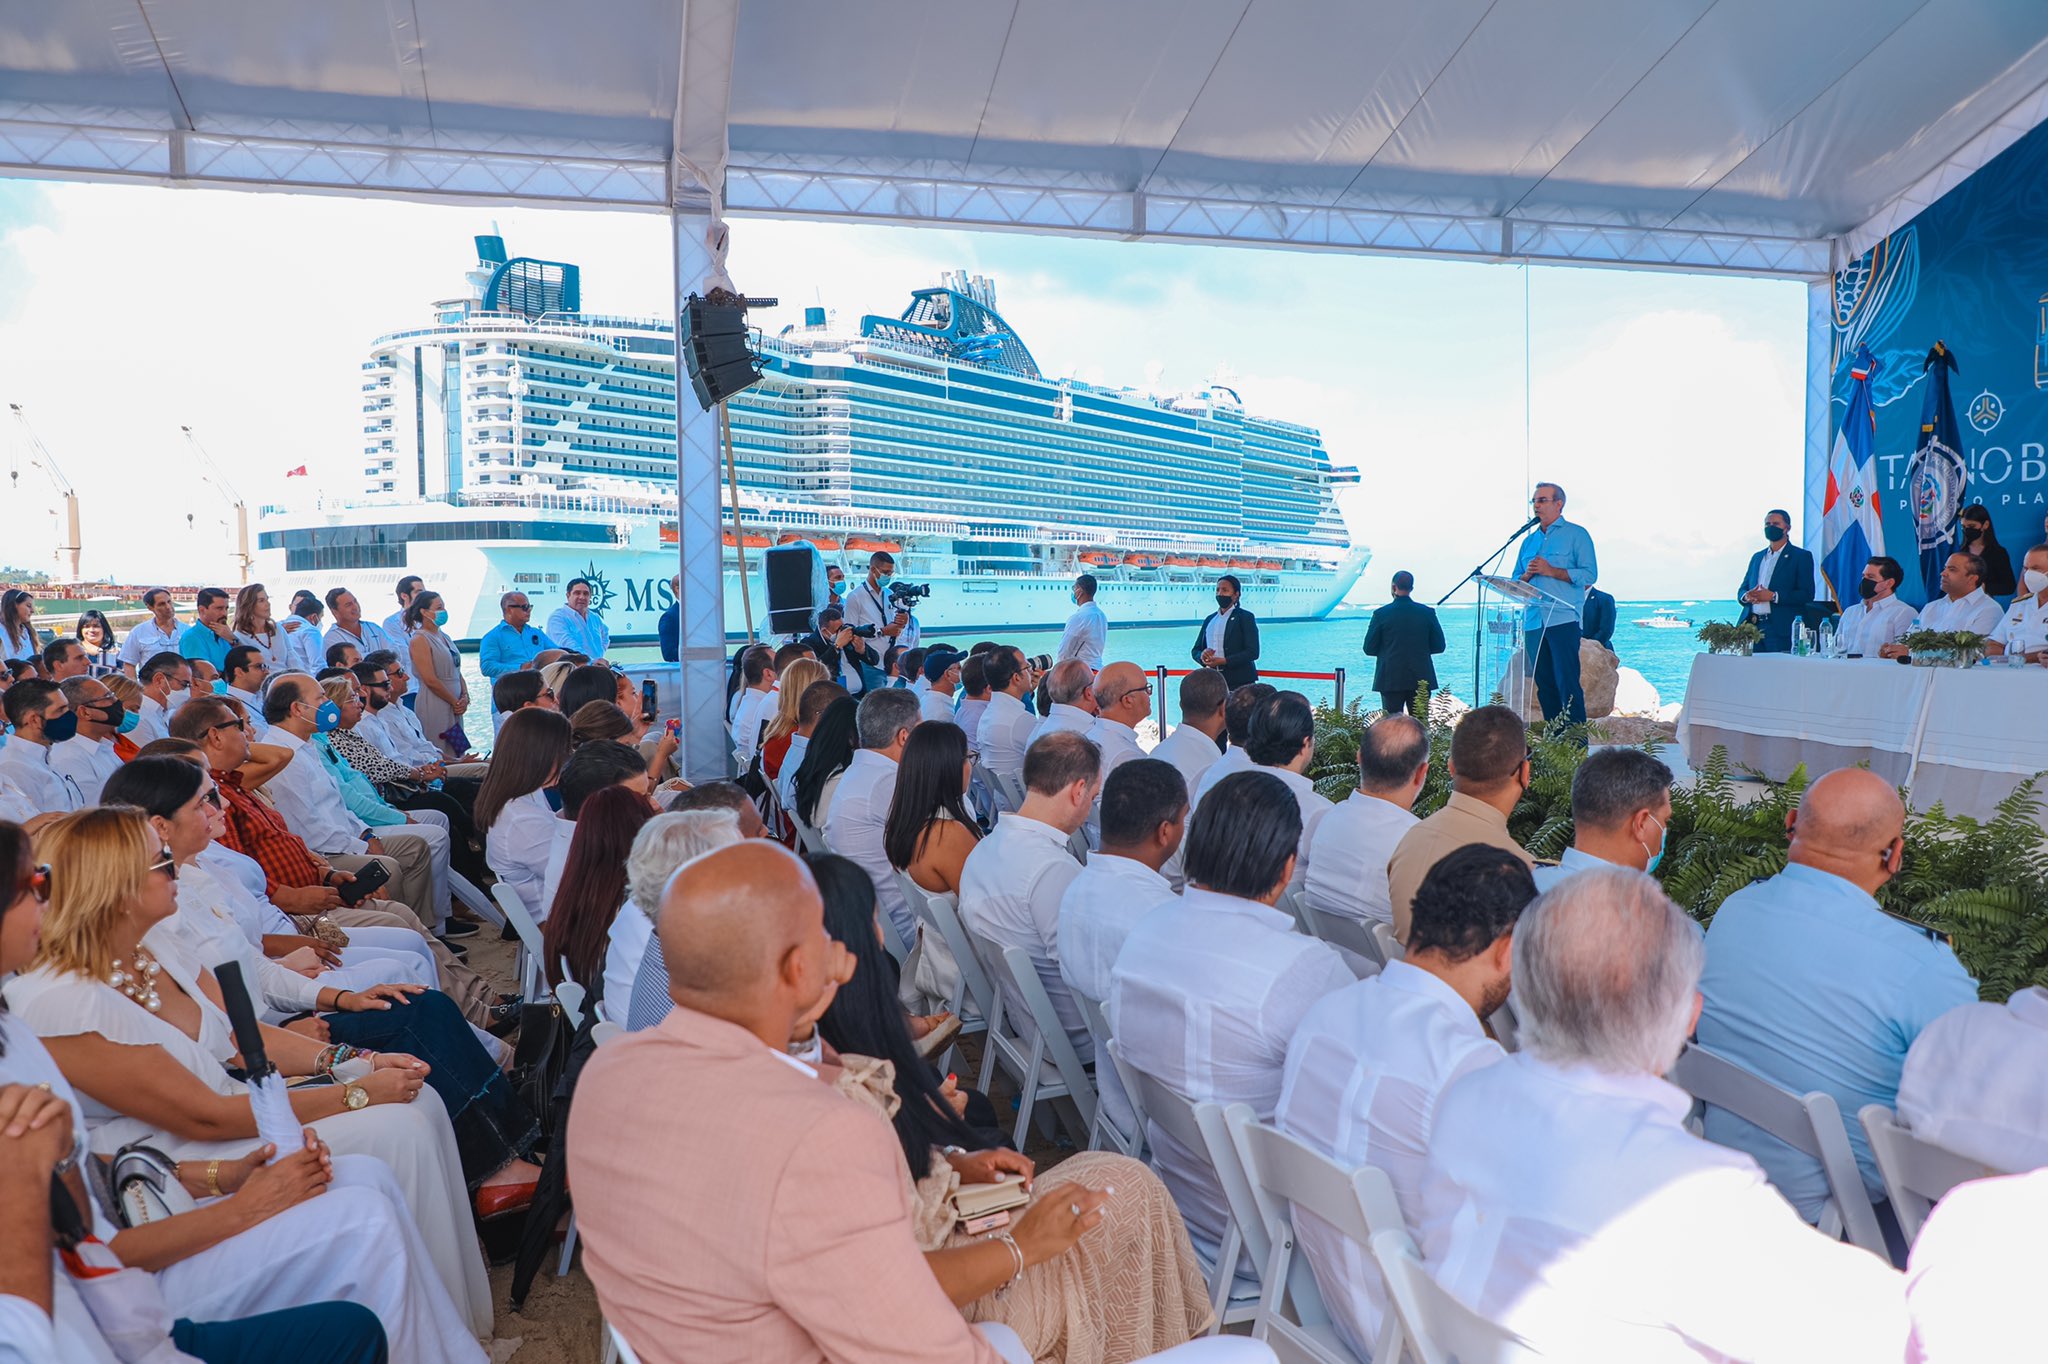 1639676106 665 Puerto Taino Bay dara mayor impulso al turismo de cruceros